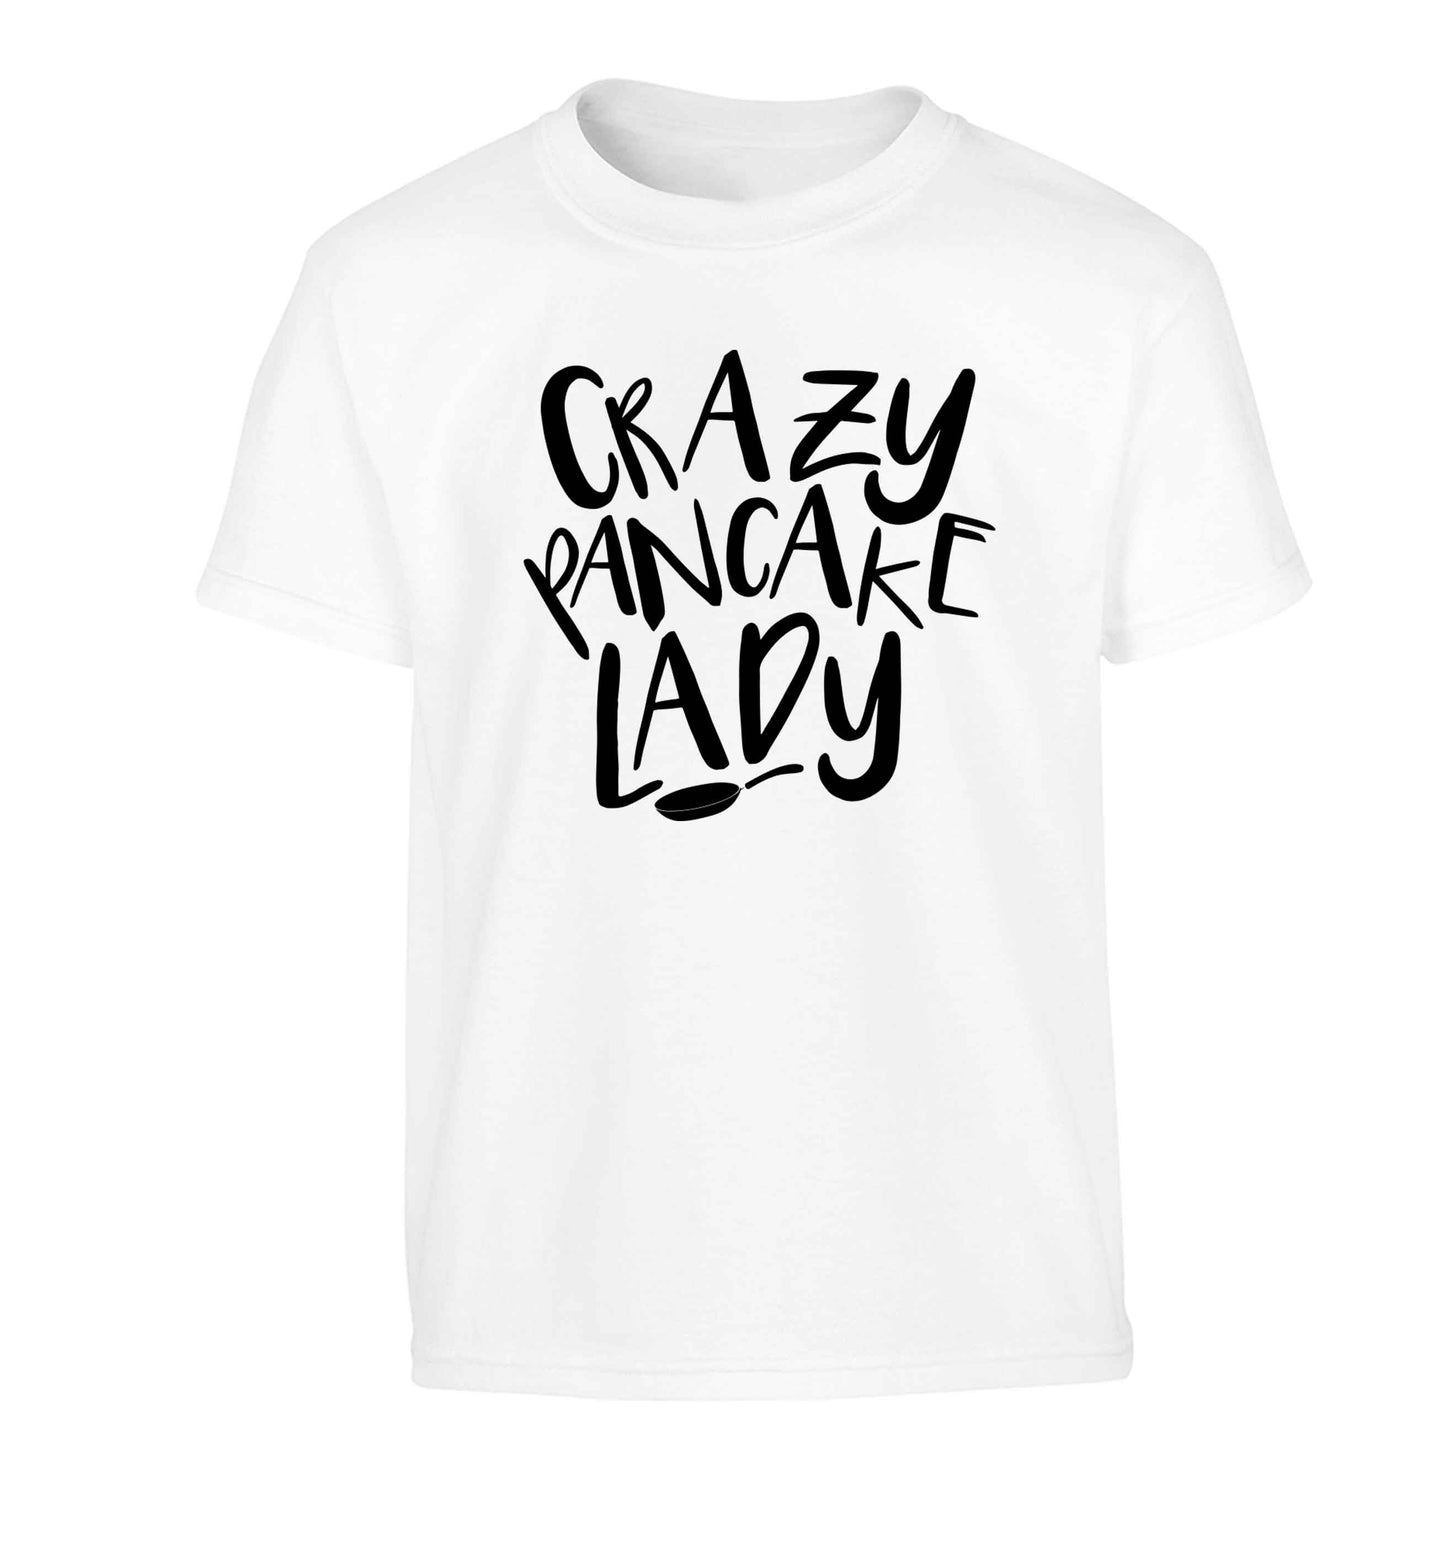 Crazy pancake lady Children's white Tshirt 12-13 Years